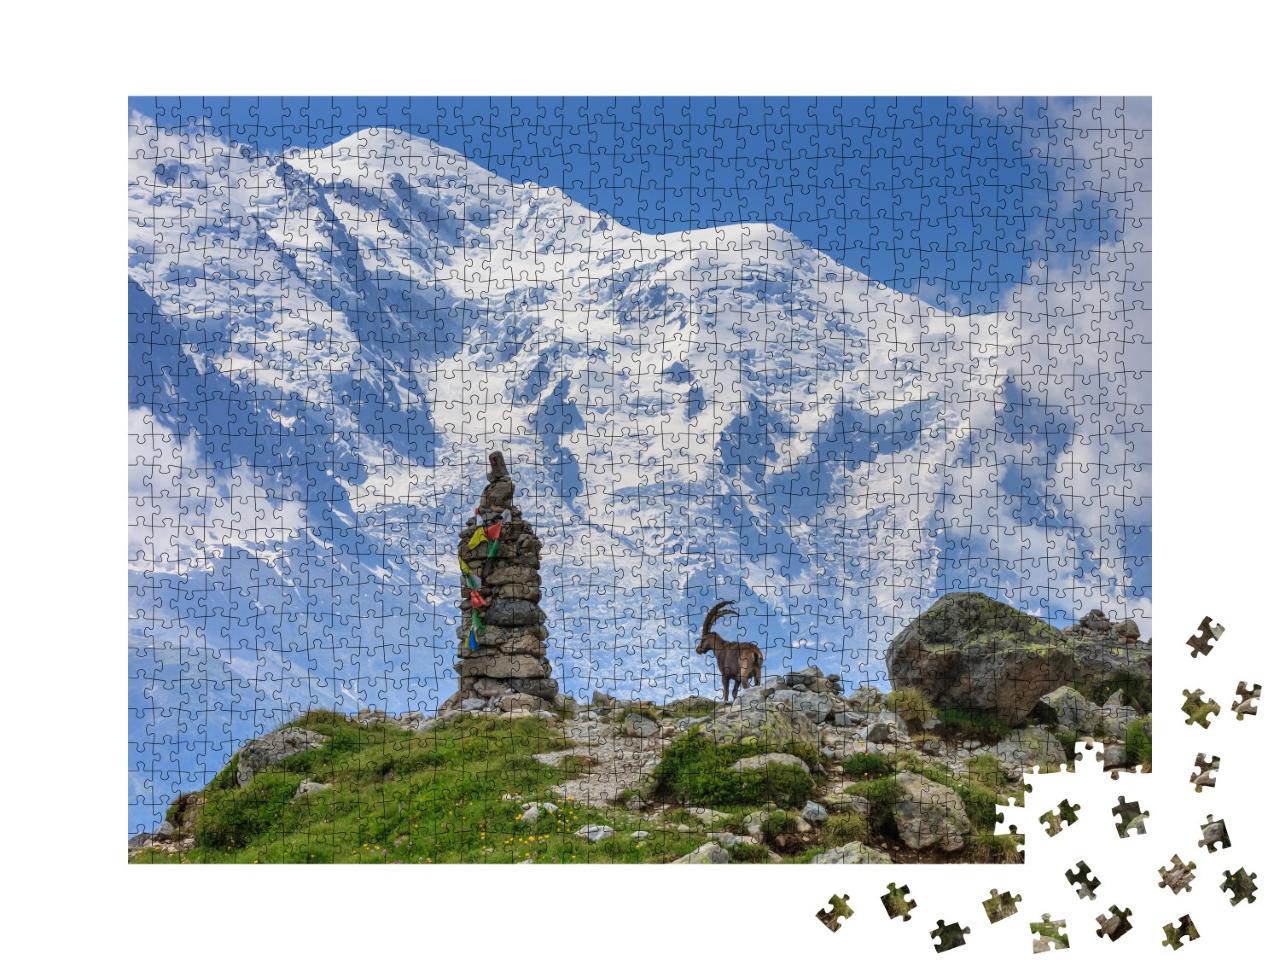 Puzzle de 1000 pièces « Bouquetin des Alpes devant le Mont Blanc, France »